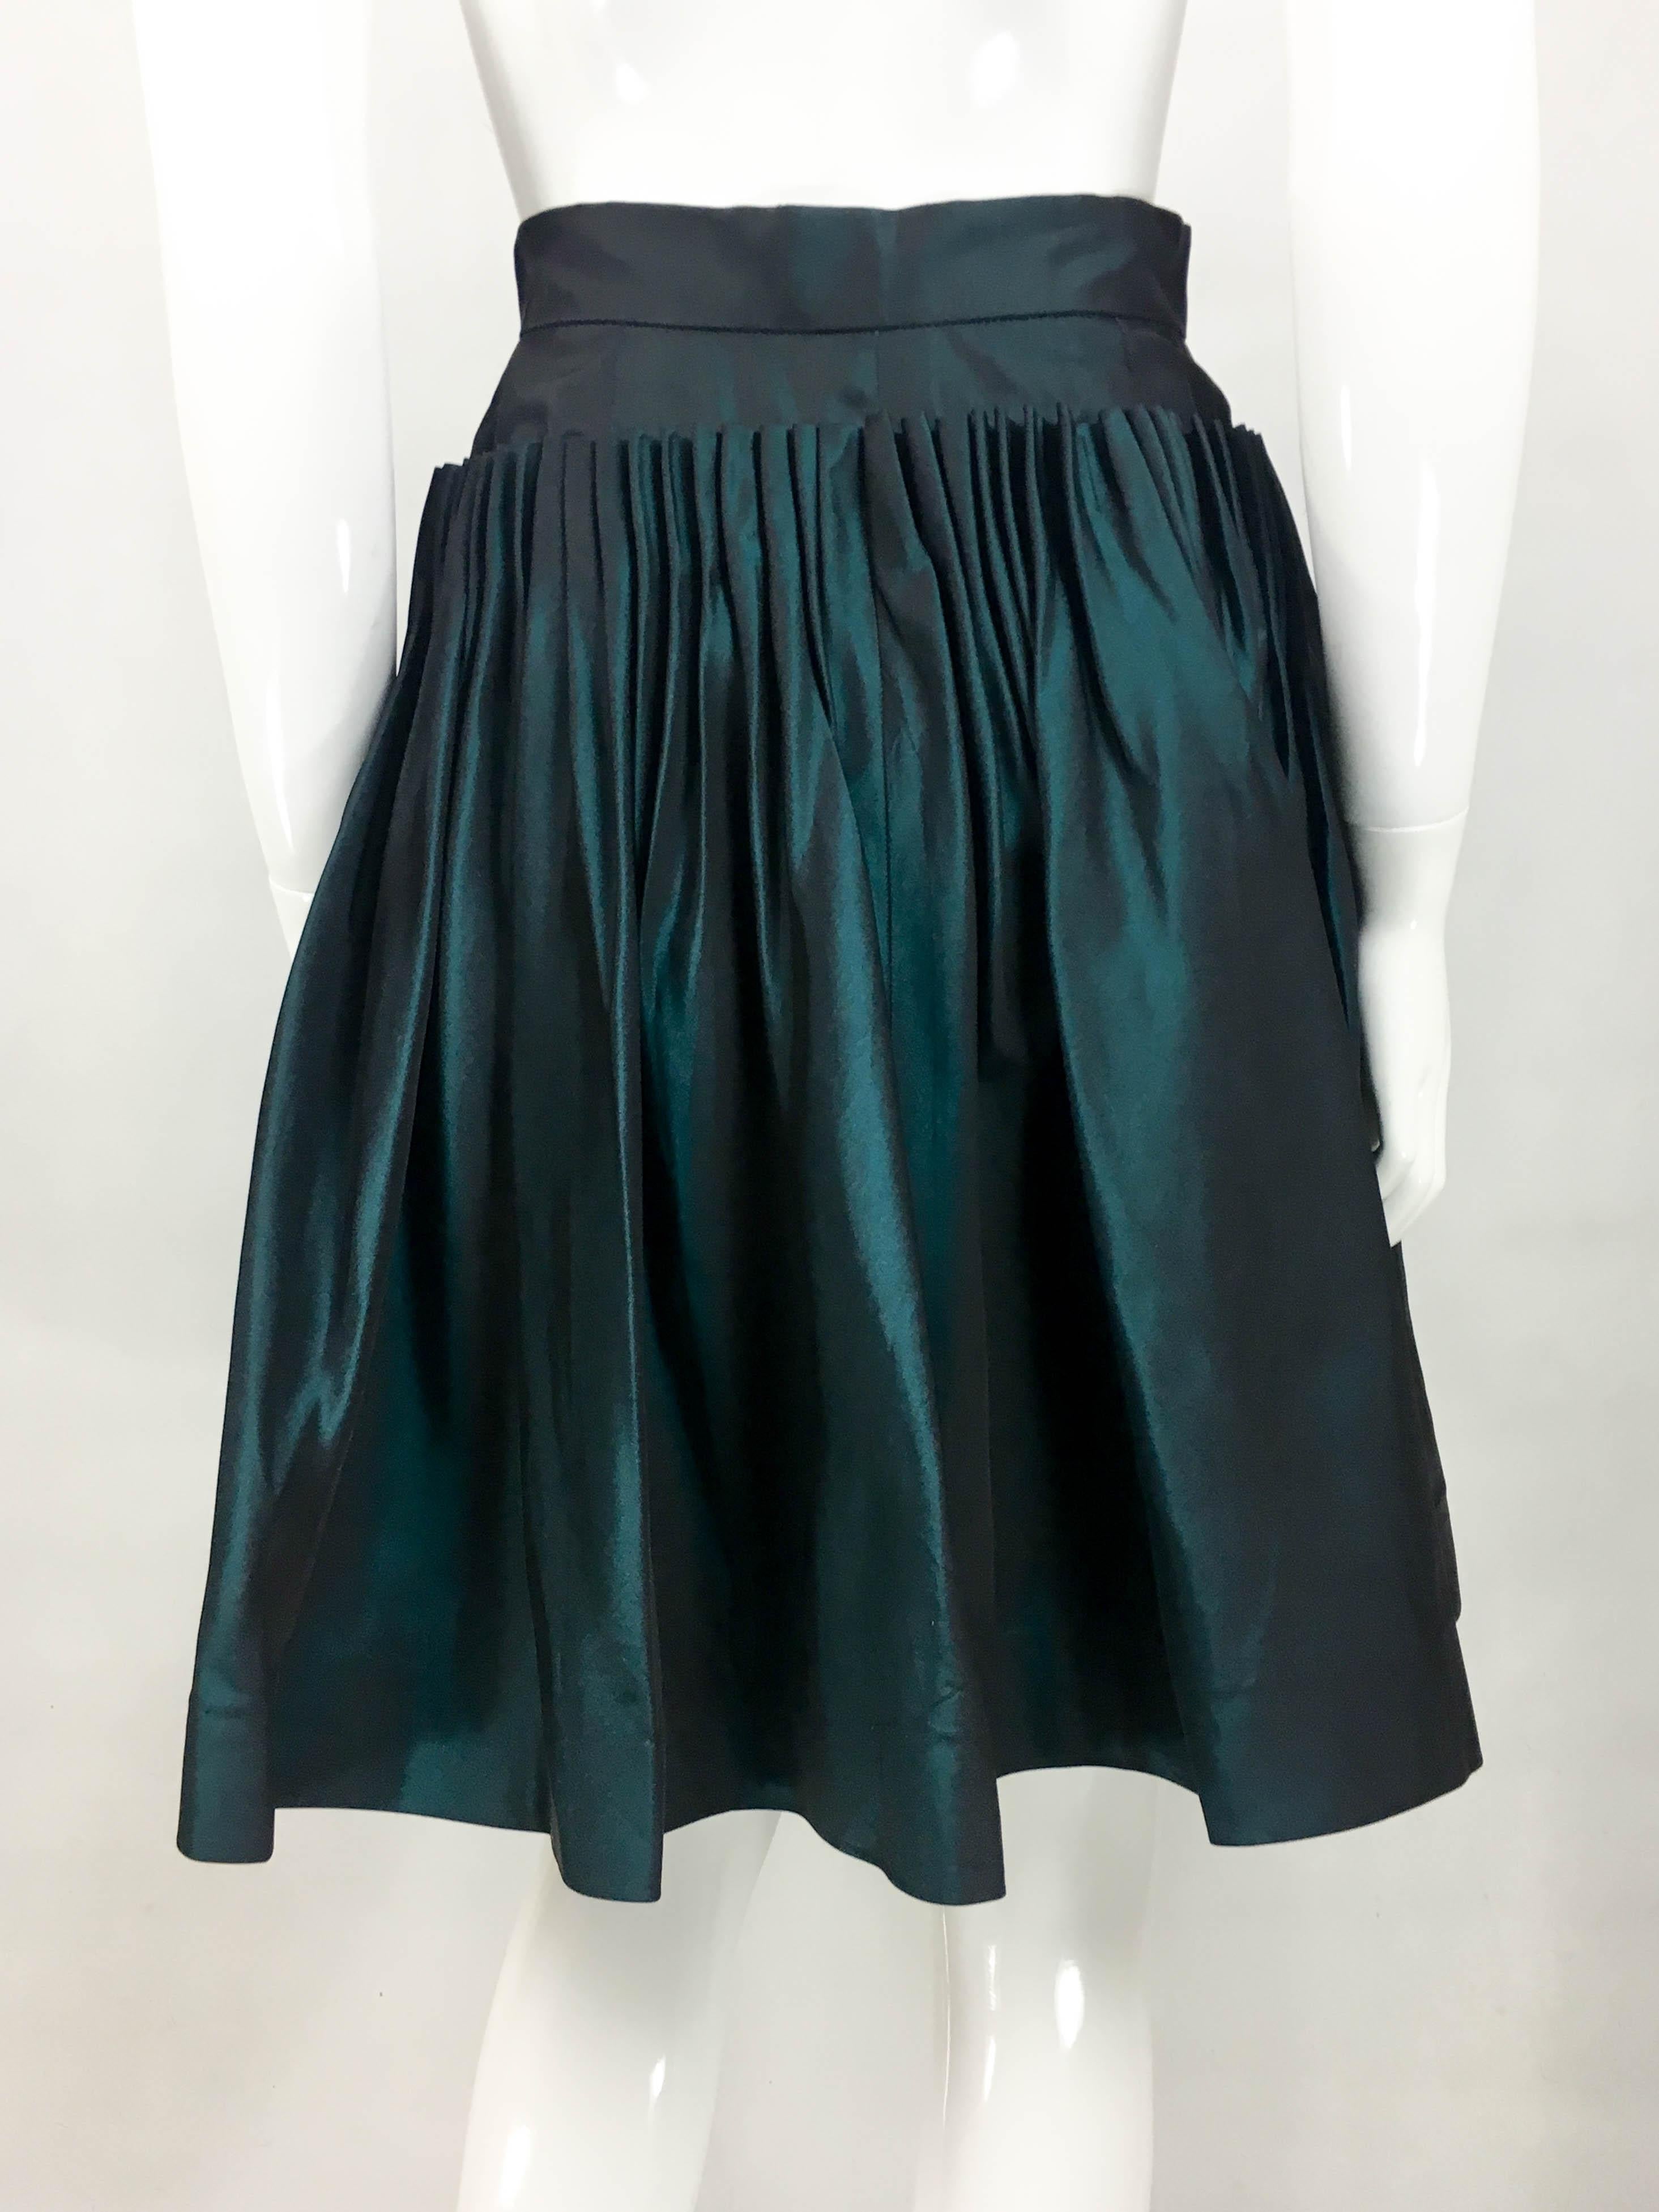 Chanel Iridescent Green Silk Skirt, 1990s  2